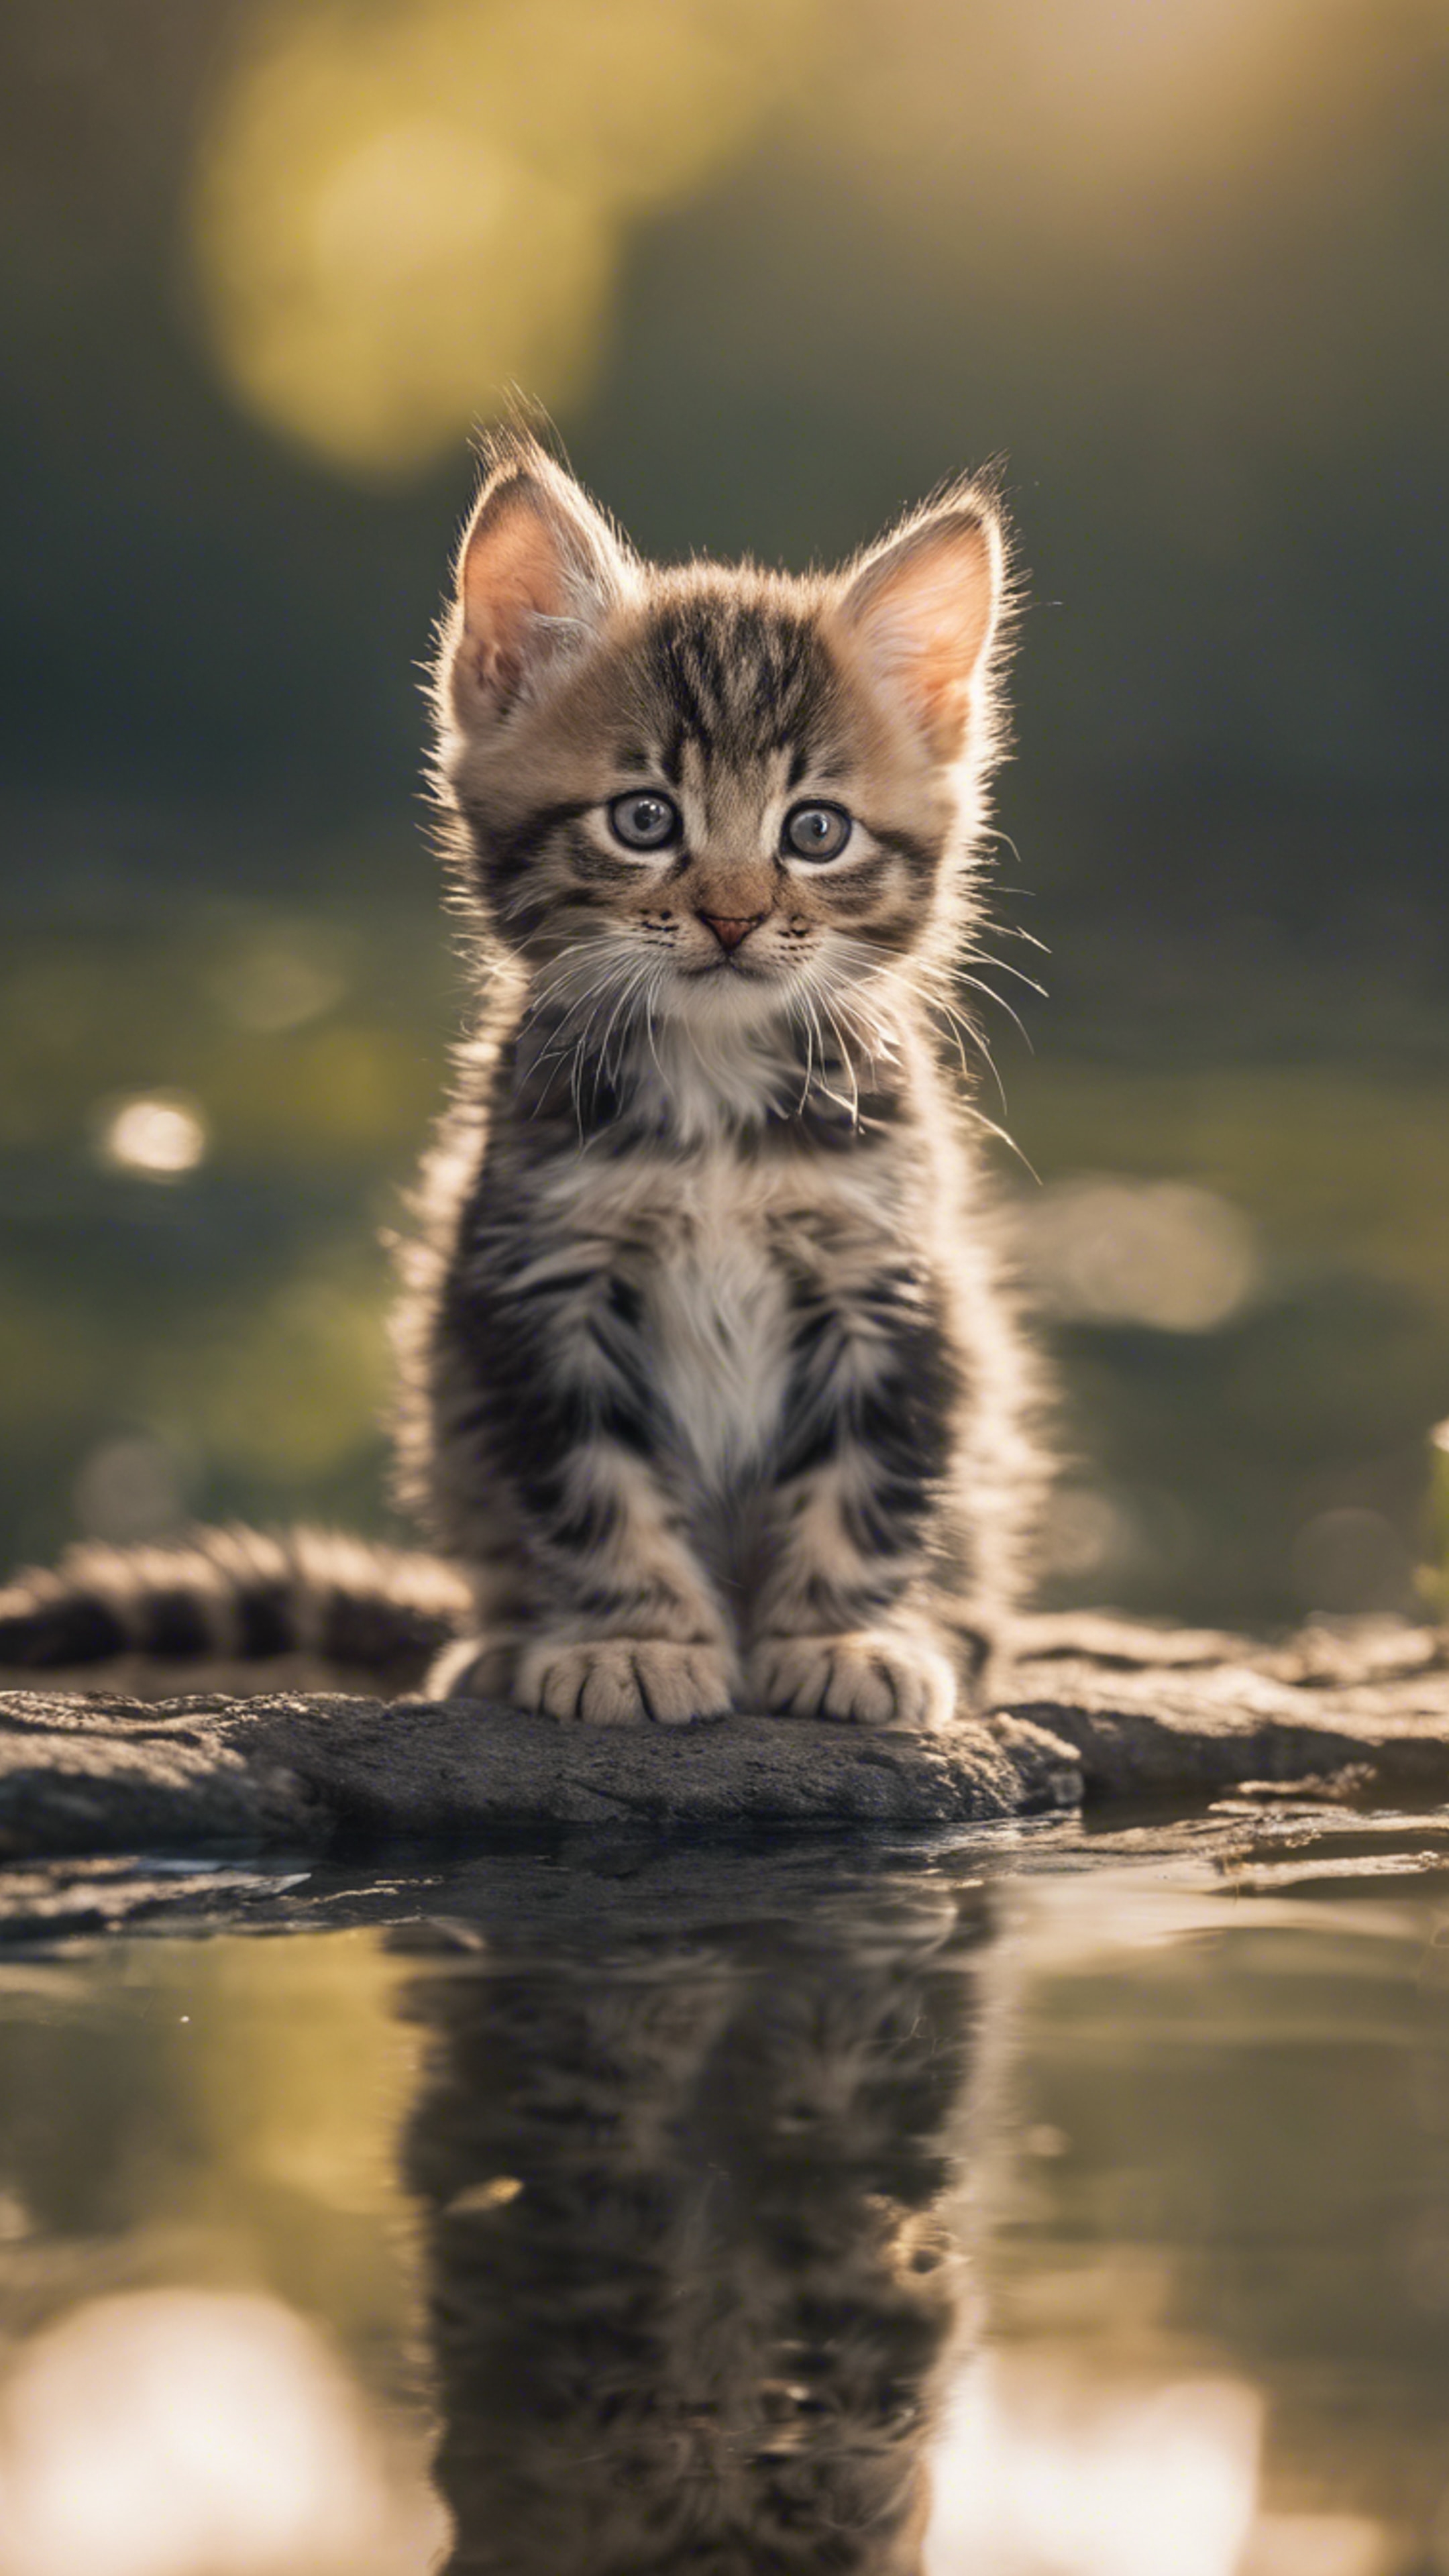 An American Bobtail kitten gazing at its reflection in a clear still pond. Tapeta[44cb4f7b57f44b00b454]